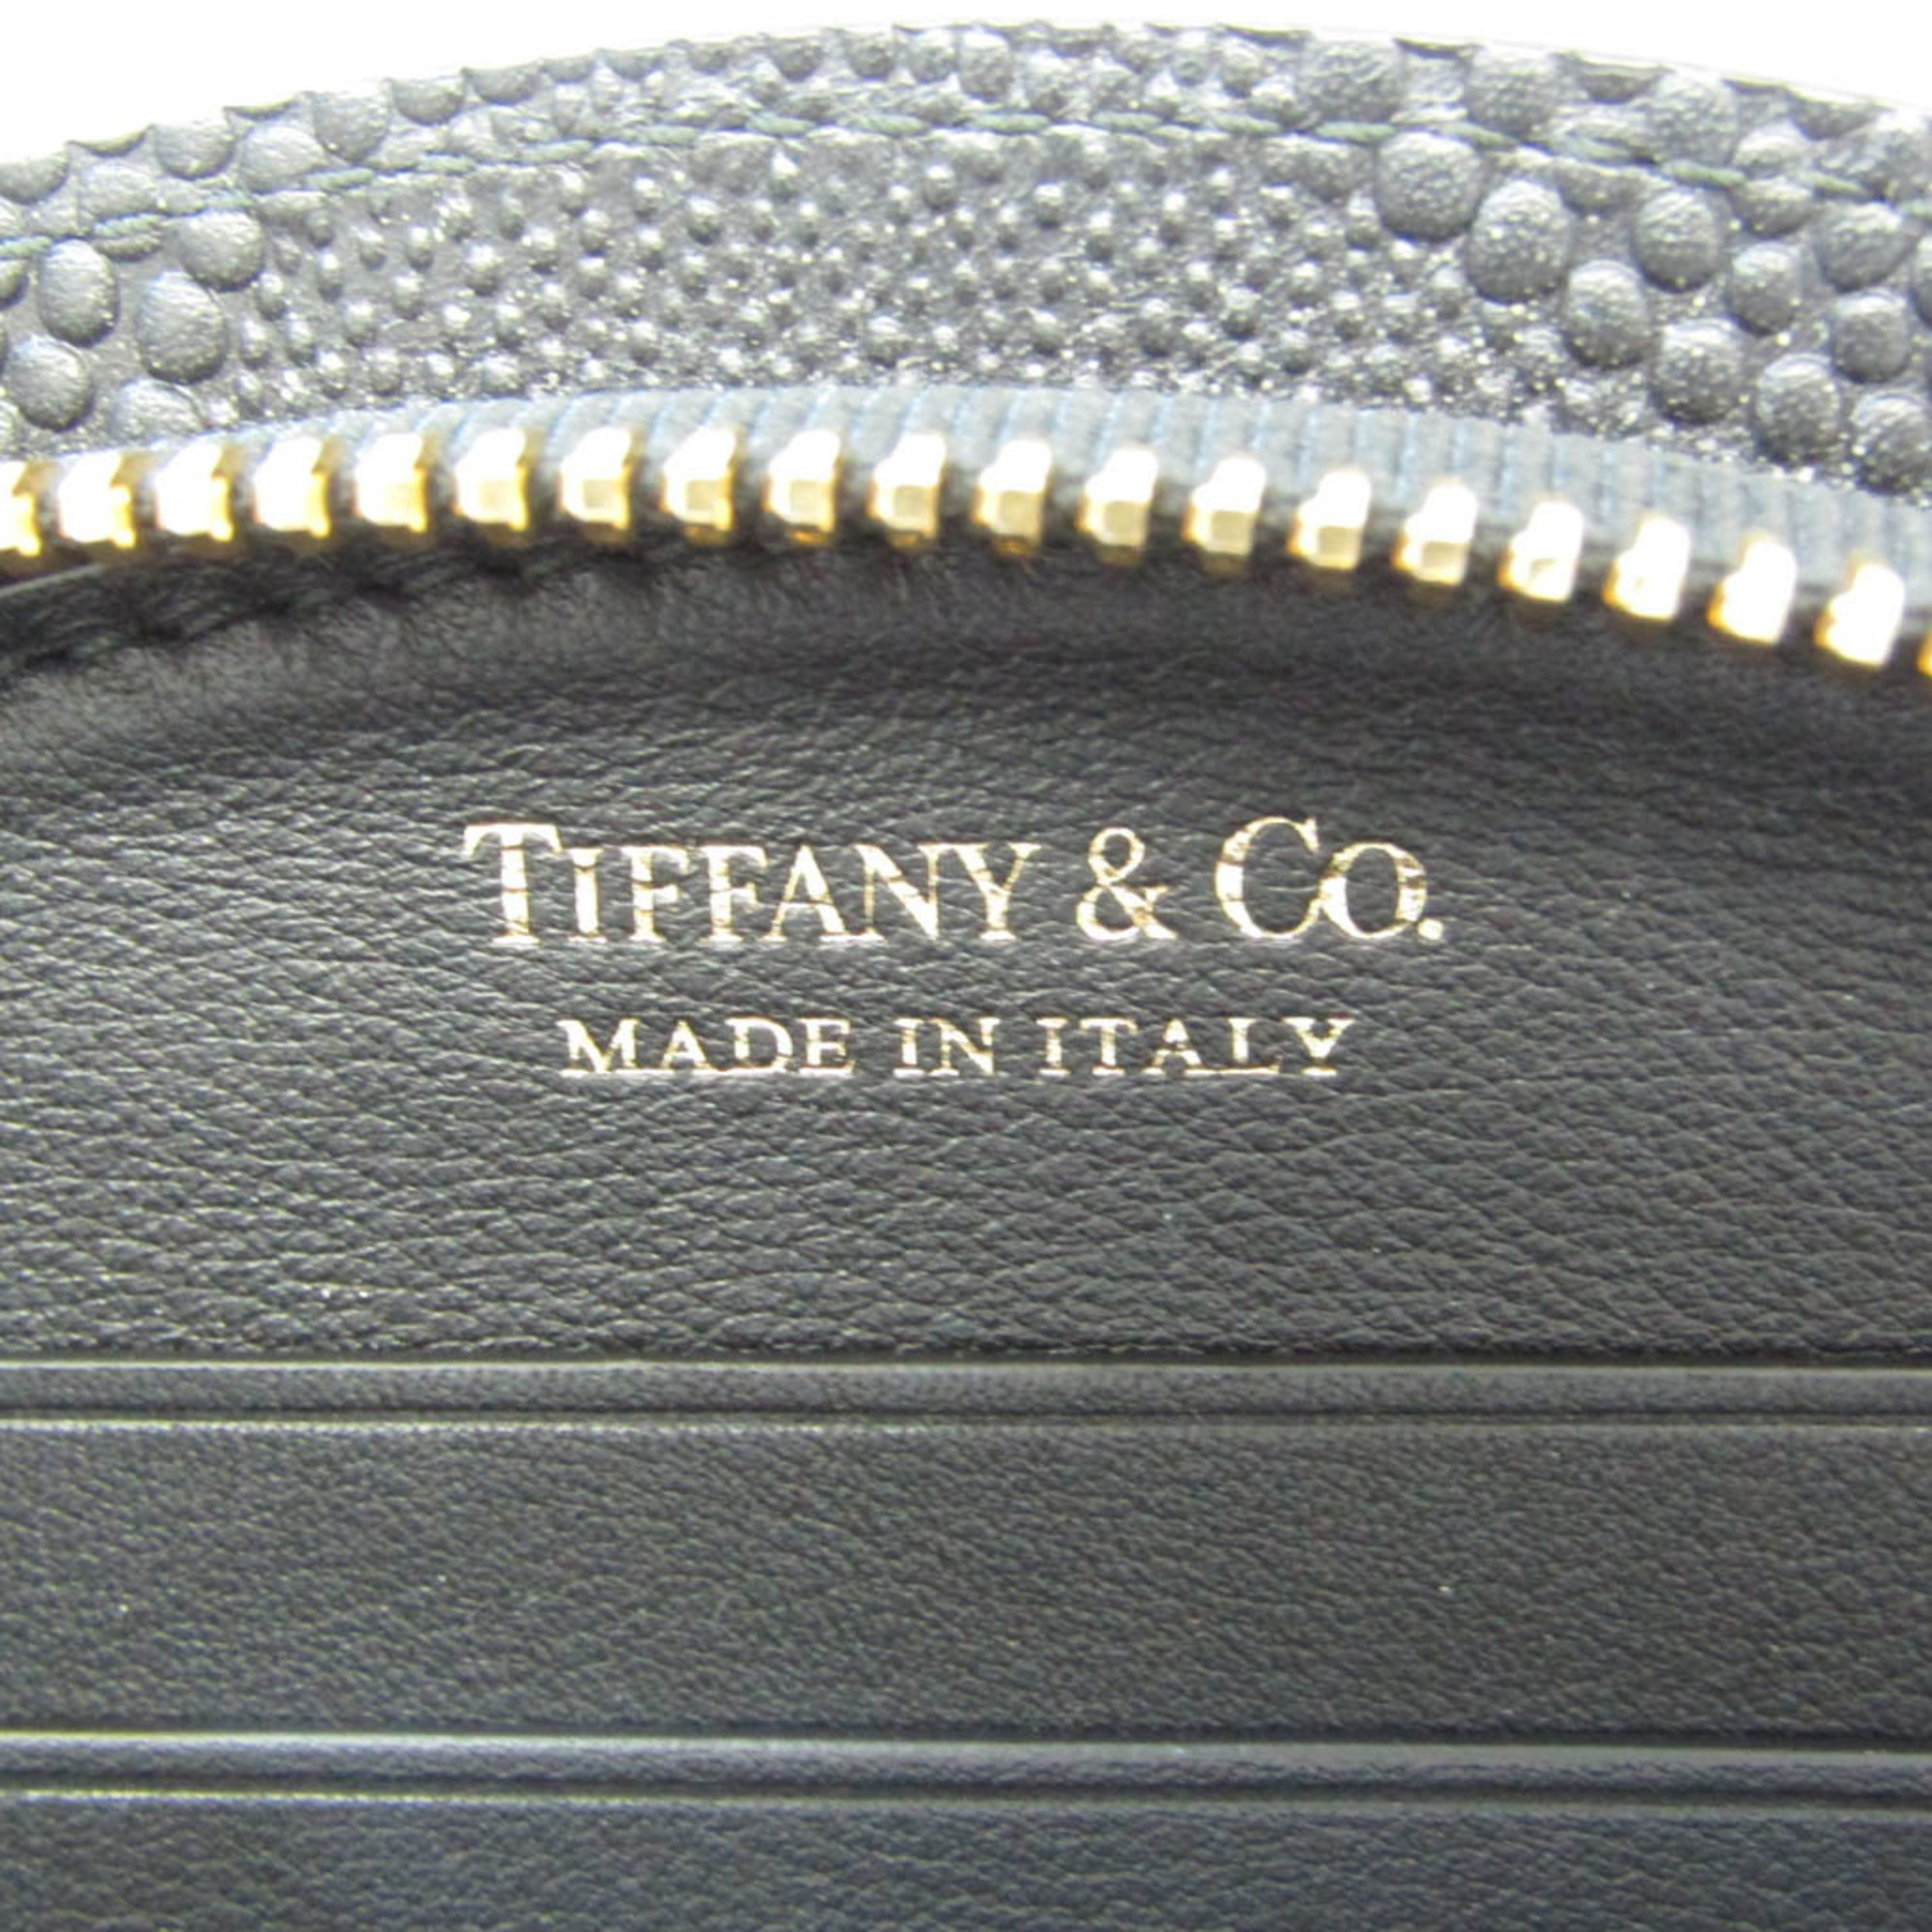 Tiffany Half Moon Women,Men Leather Long Wallet (bi-fold) Black